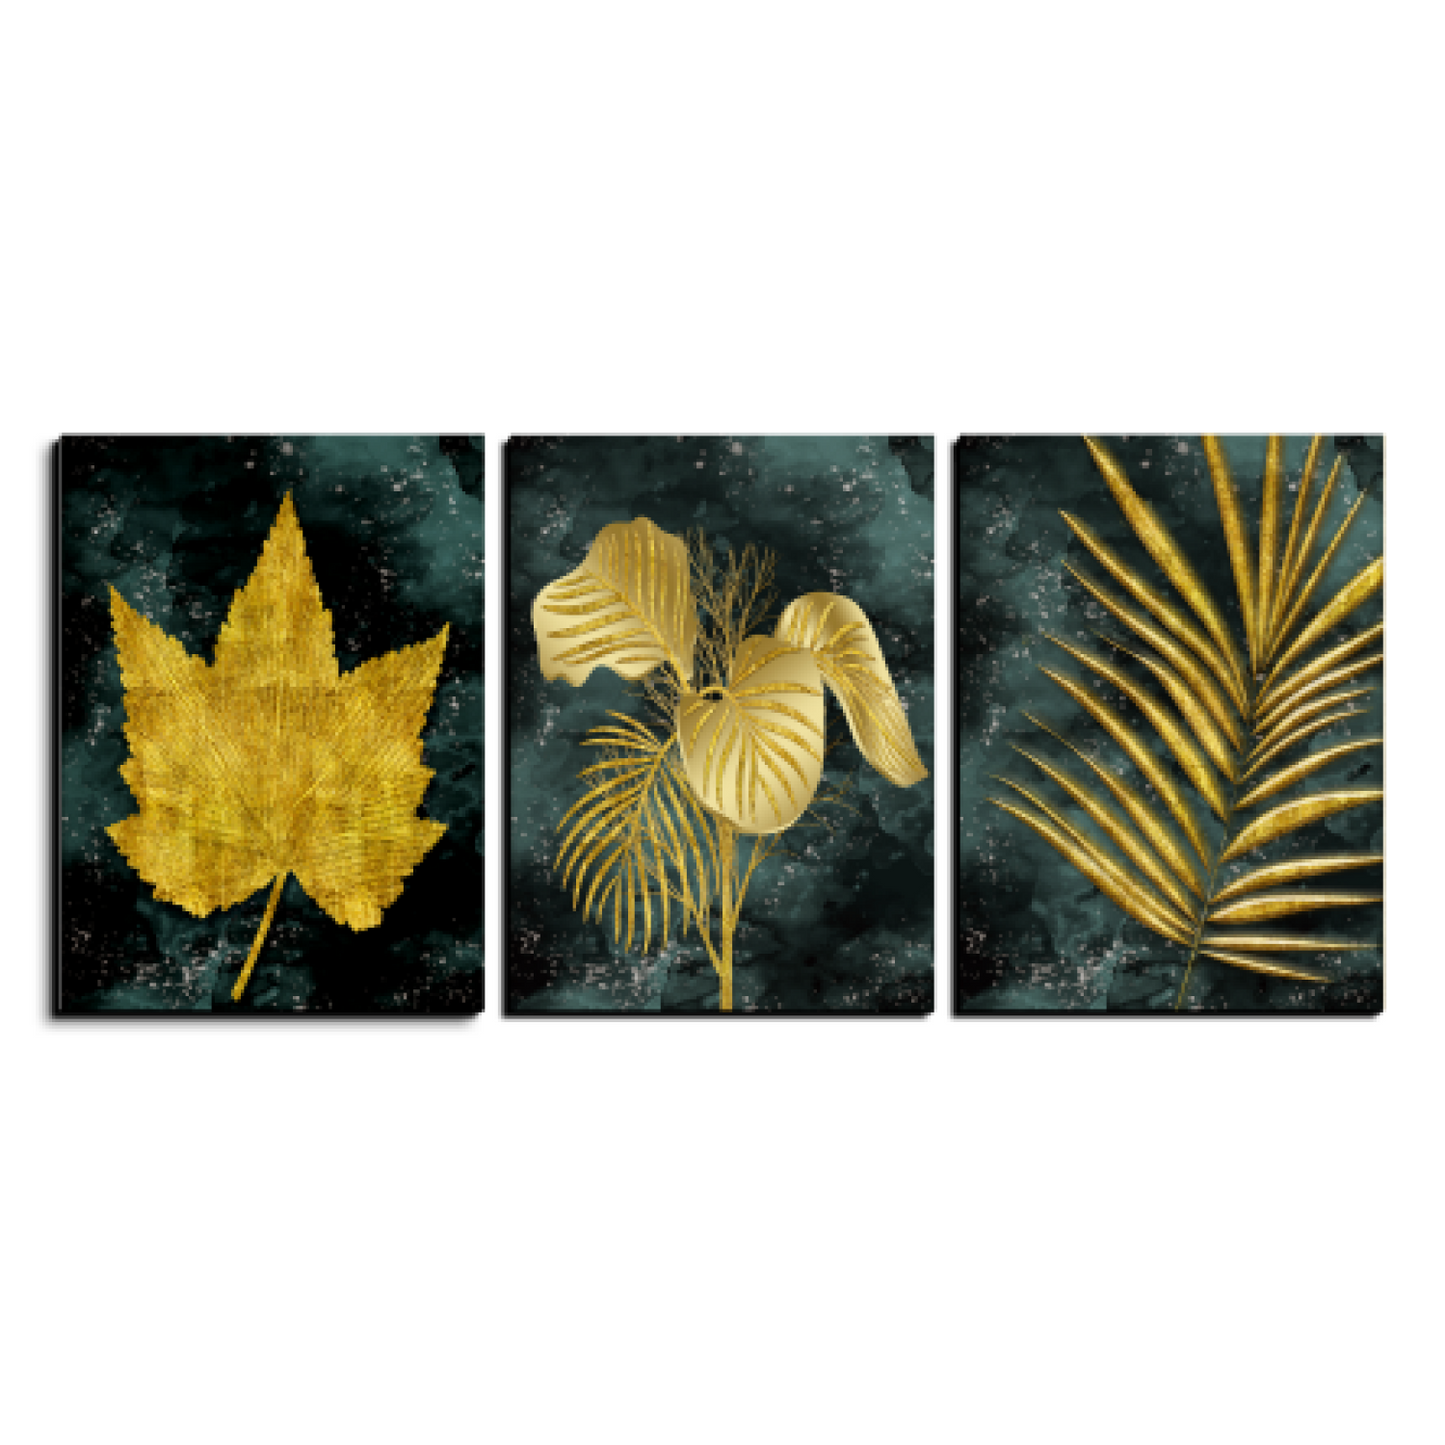 Assorted Gold Leaf Wood Print Wall Art Set of 3